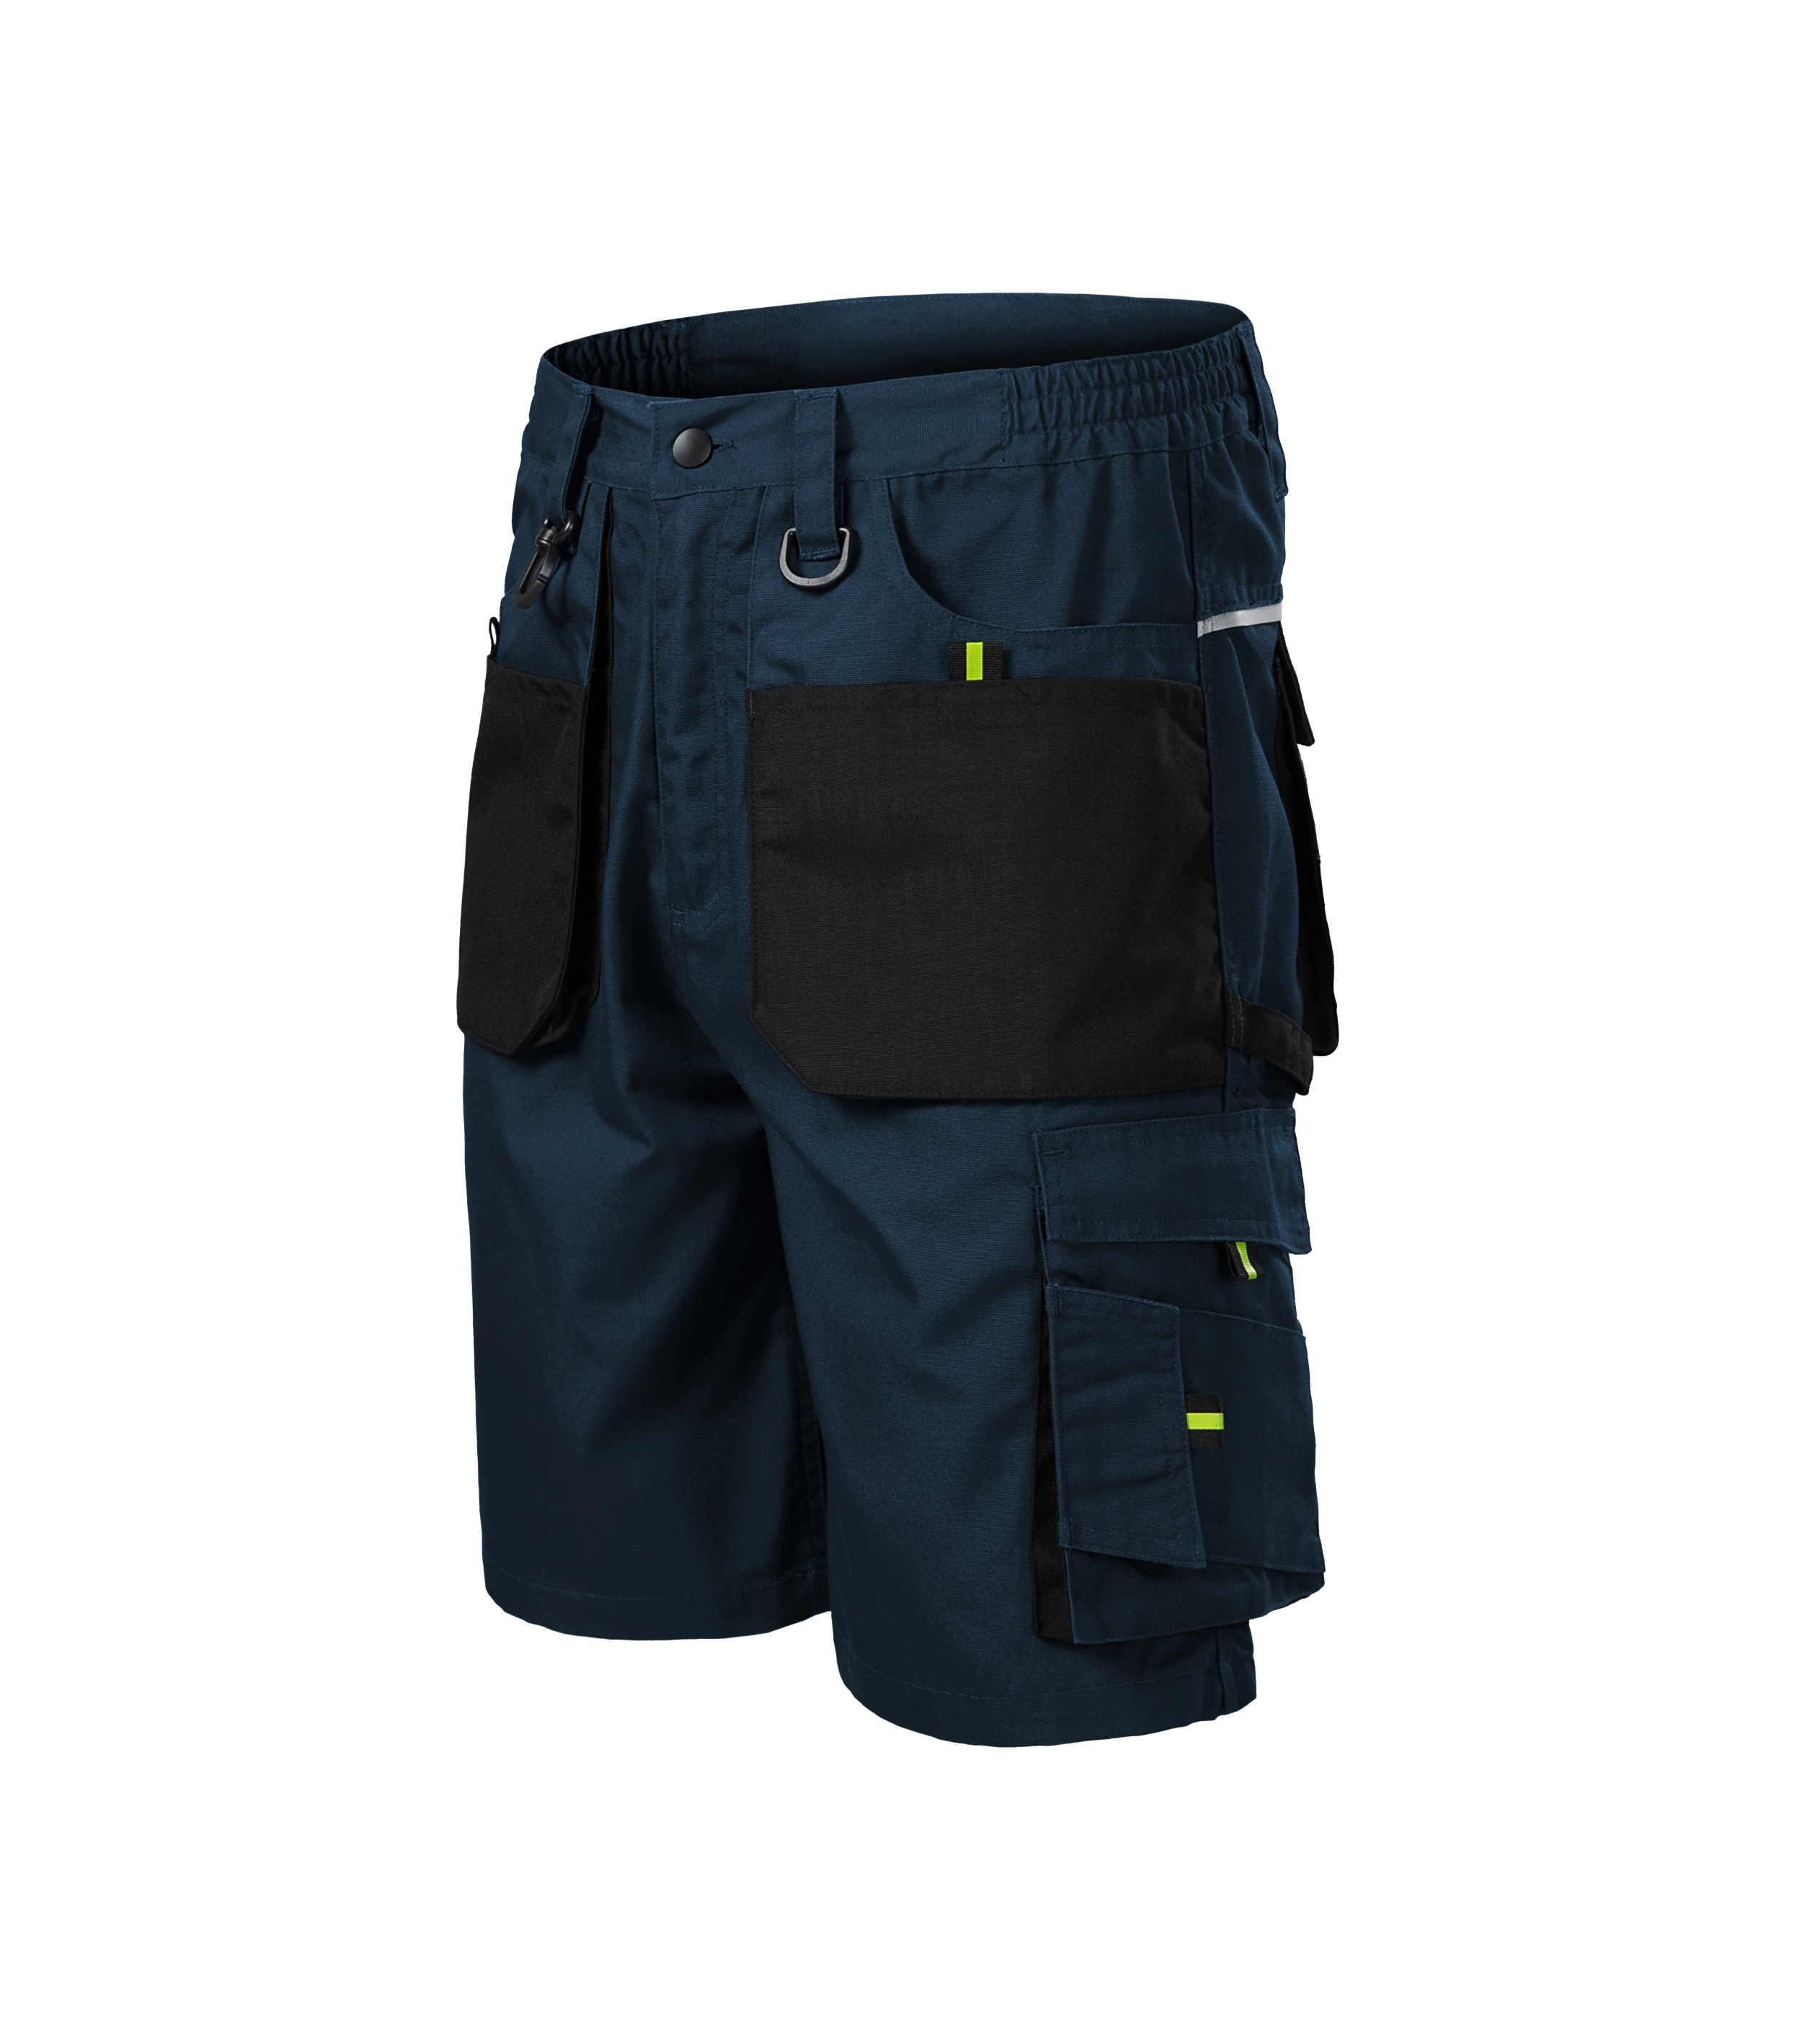 kurze Arbeitshose Herren - RANGER W06 - 10 multifunktionale Taschen und Doppeelnaht für mehr Haltbarkeit - Arbeitshosen Männer für Outdoor oder workwear 